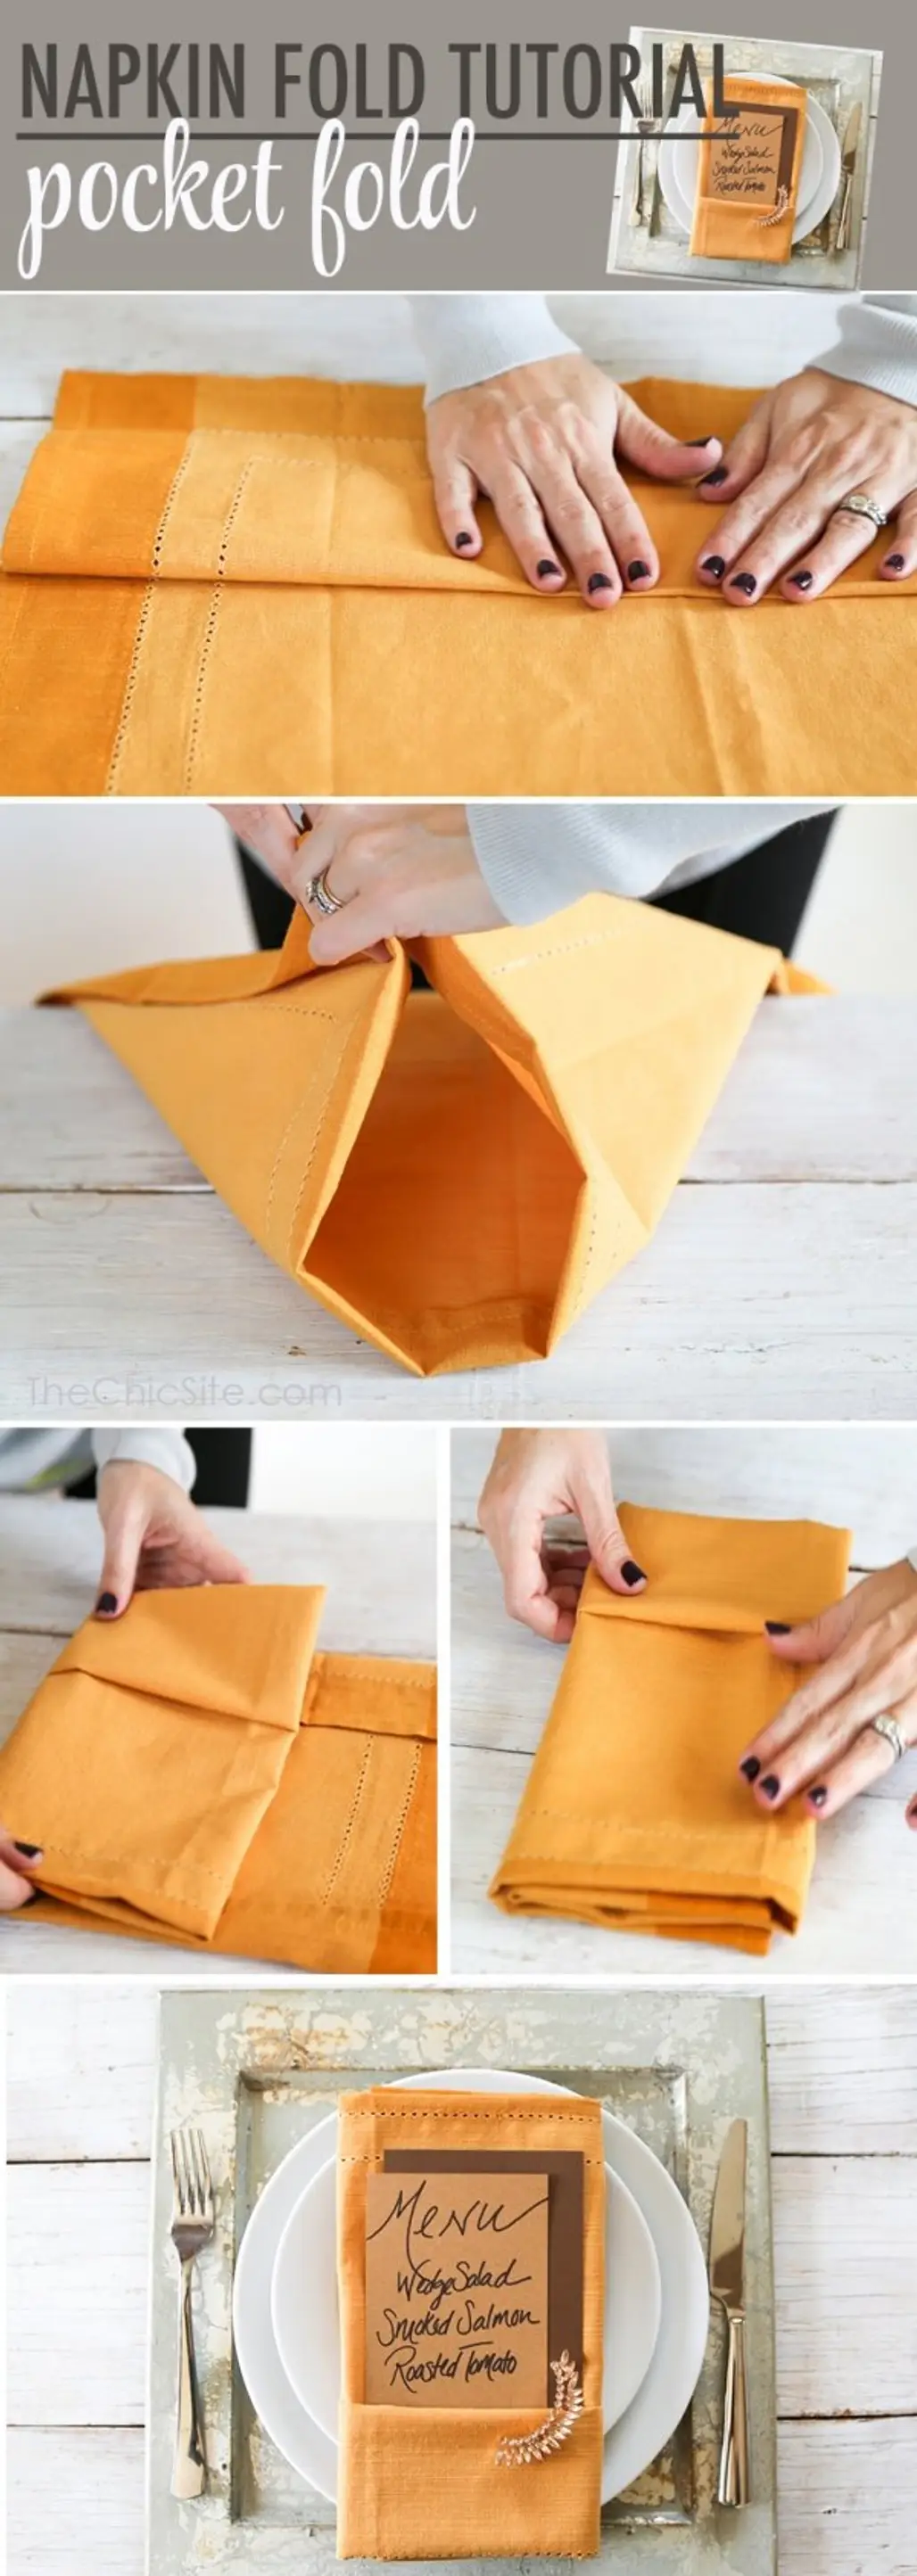 Pocket Fold Napkin